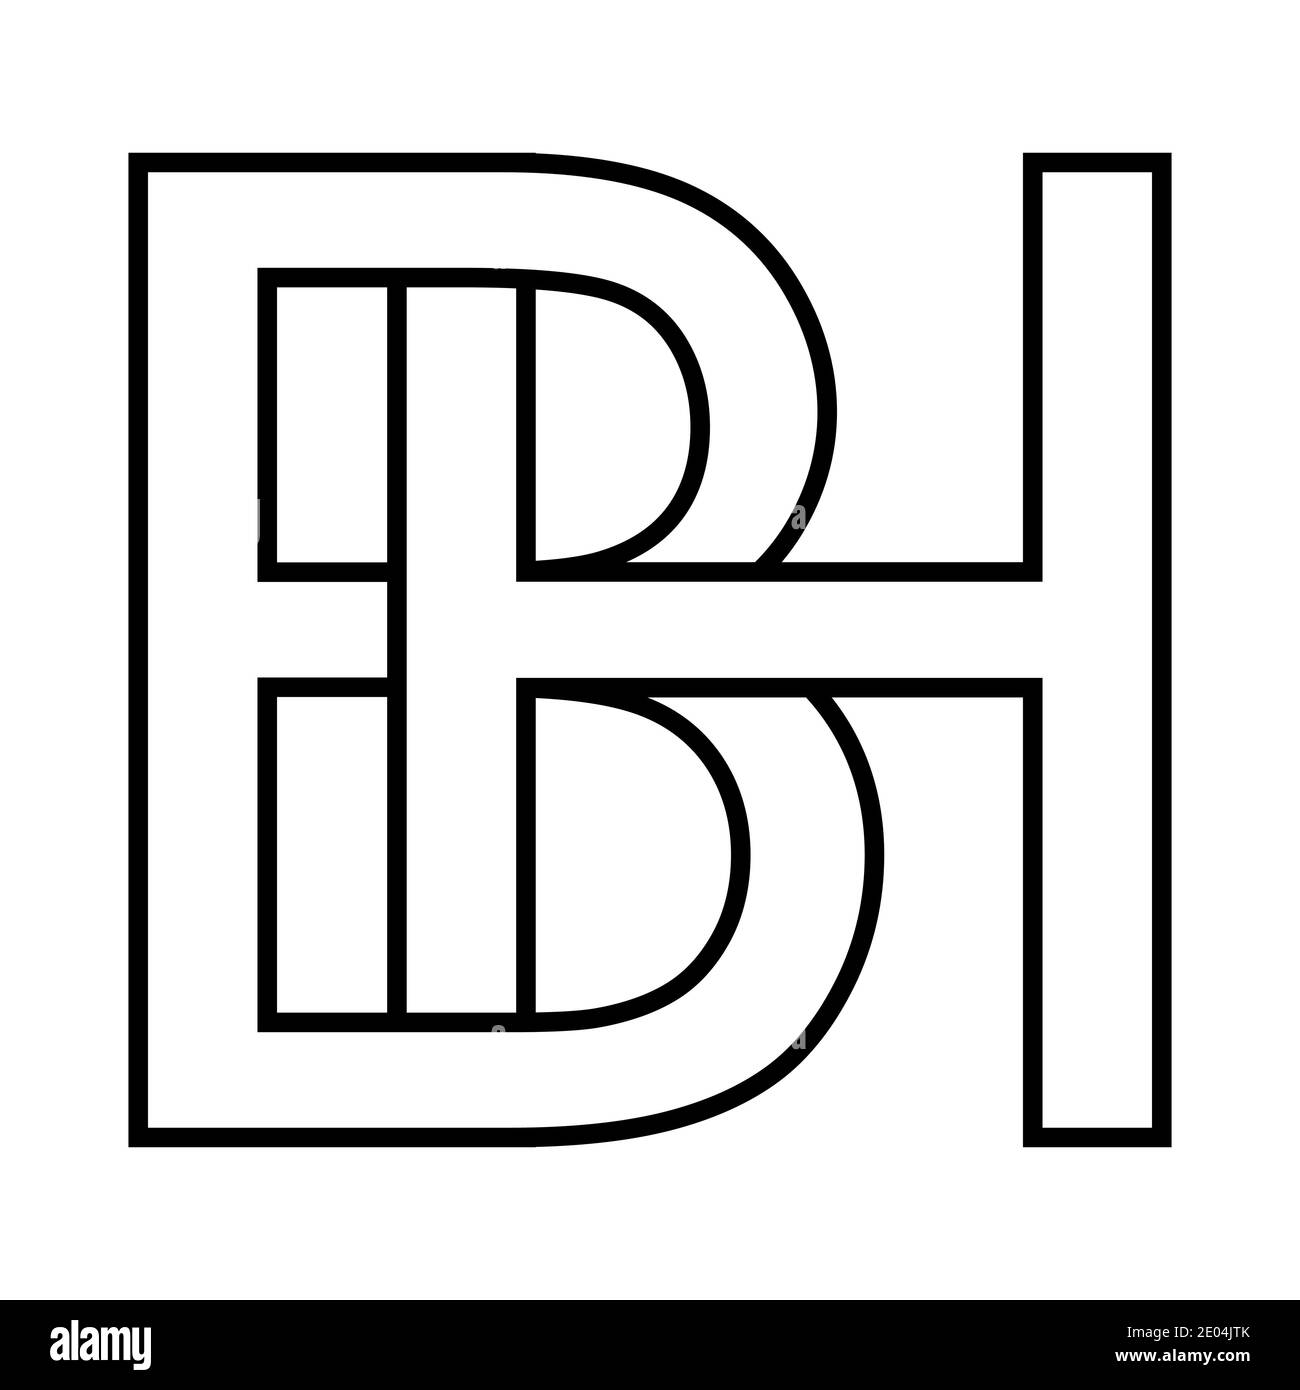 Logo Zeichen bh, GH Icon Zeichen zwei Zeilensprungbuchstaben b h Vektor Logo bh, hb erste Großbuchstaben Muster Alphabet b, h Stock Vektor